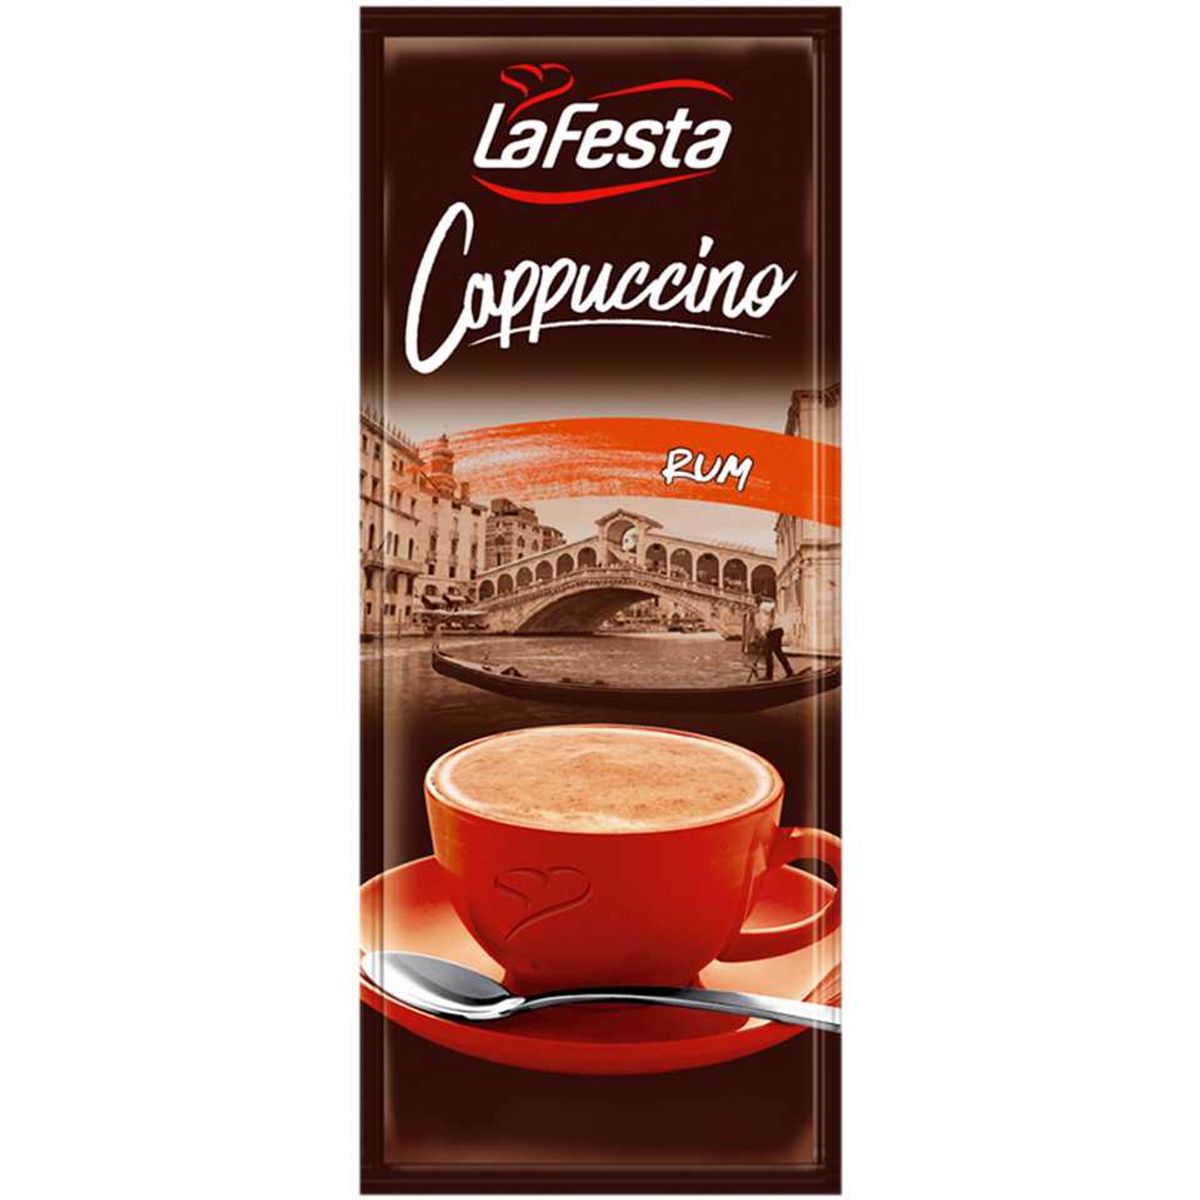 Cappuccino Classic